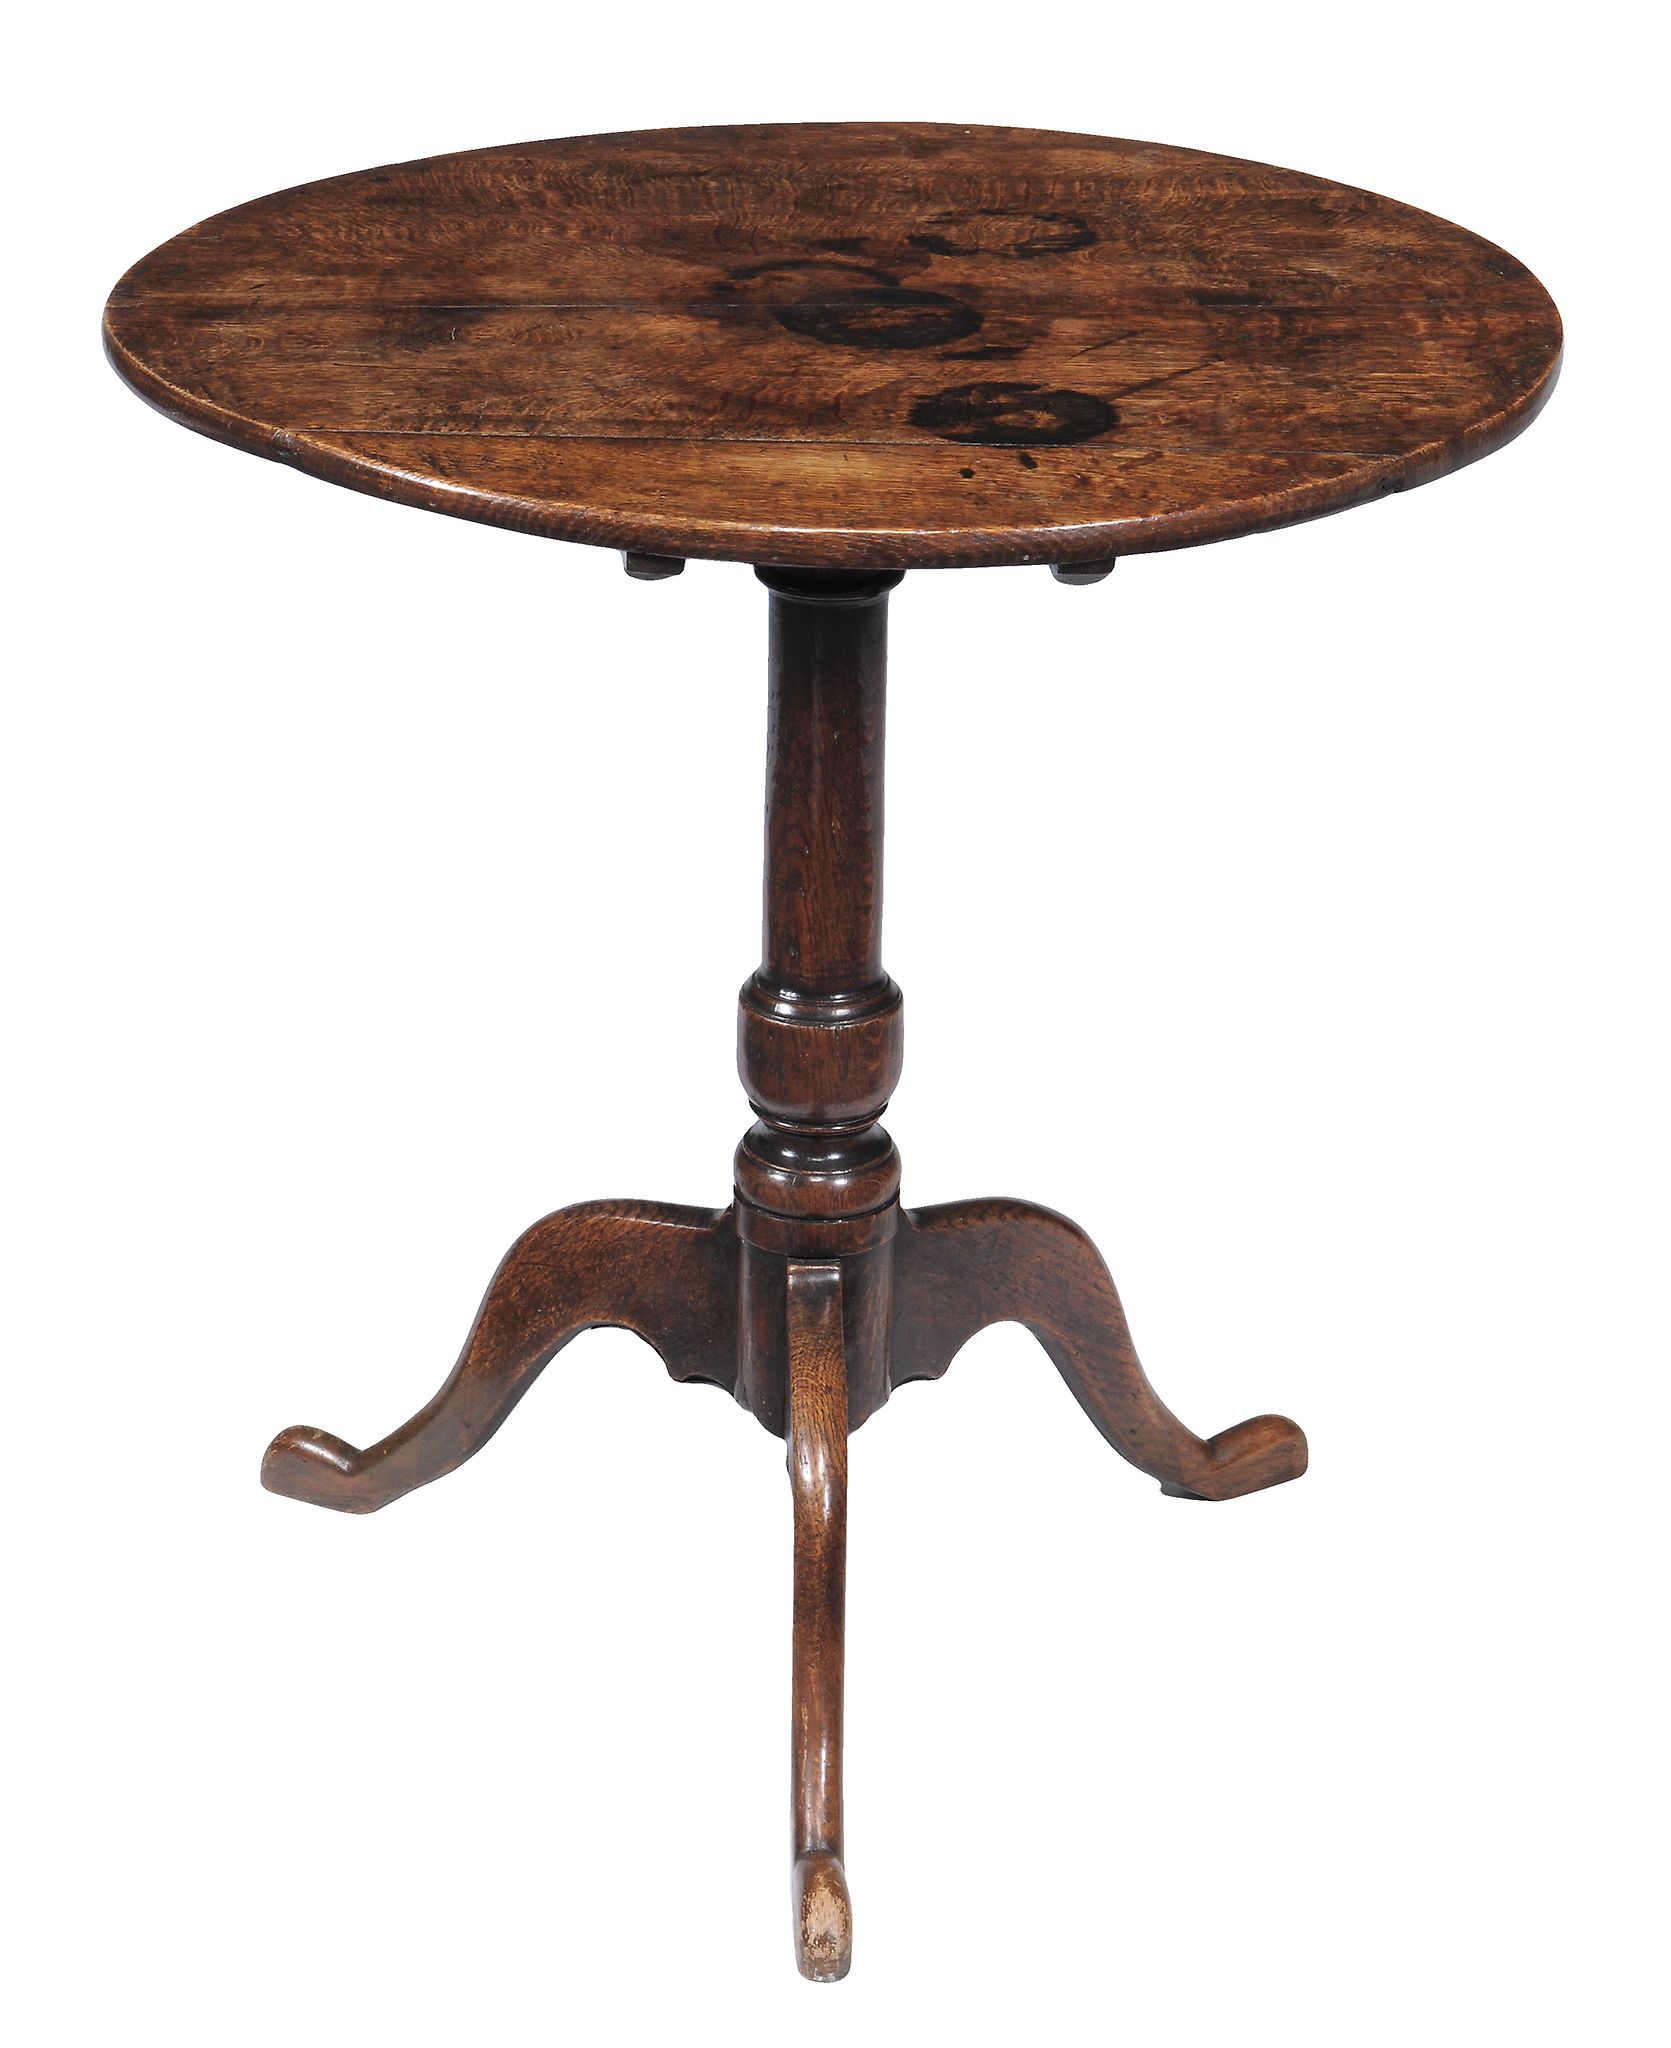 An oak tripod table , early 18th century, the oval tilt top above turned...  An oak tripod